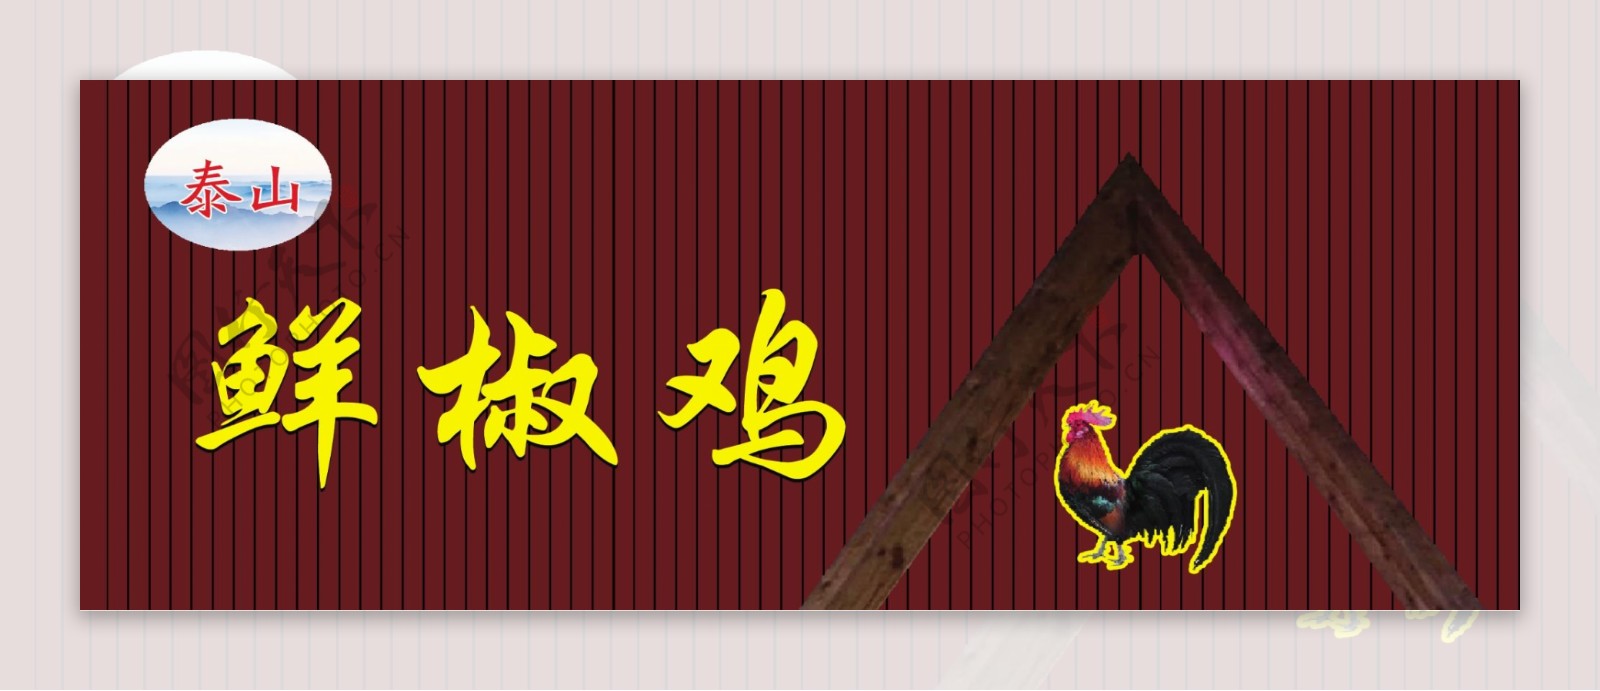 泰山花椒鸡广告牌炒鸡